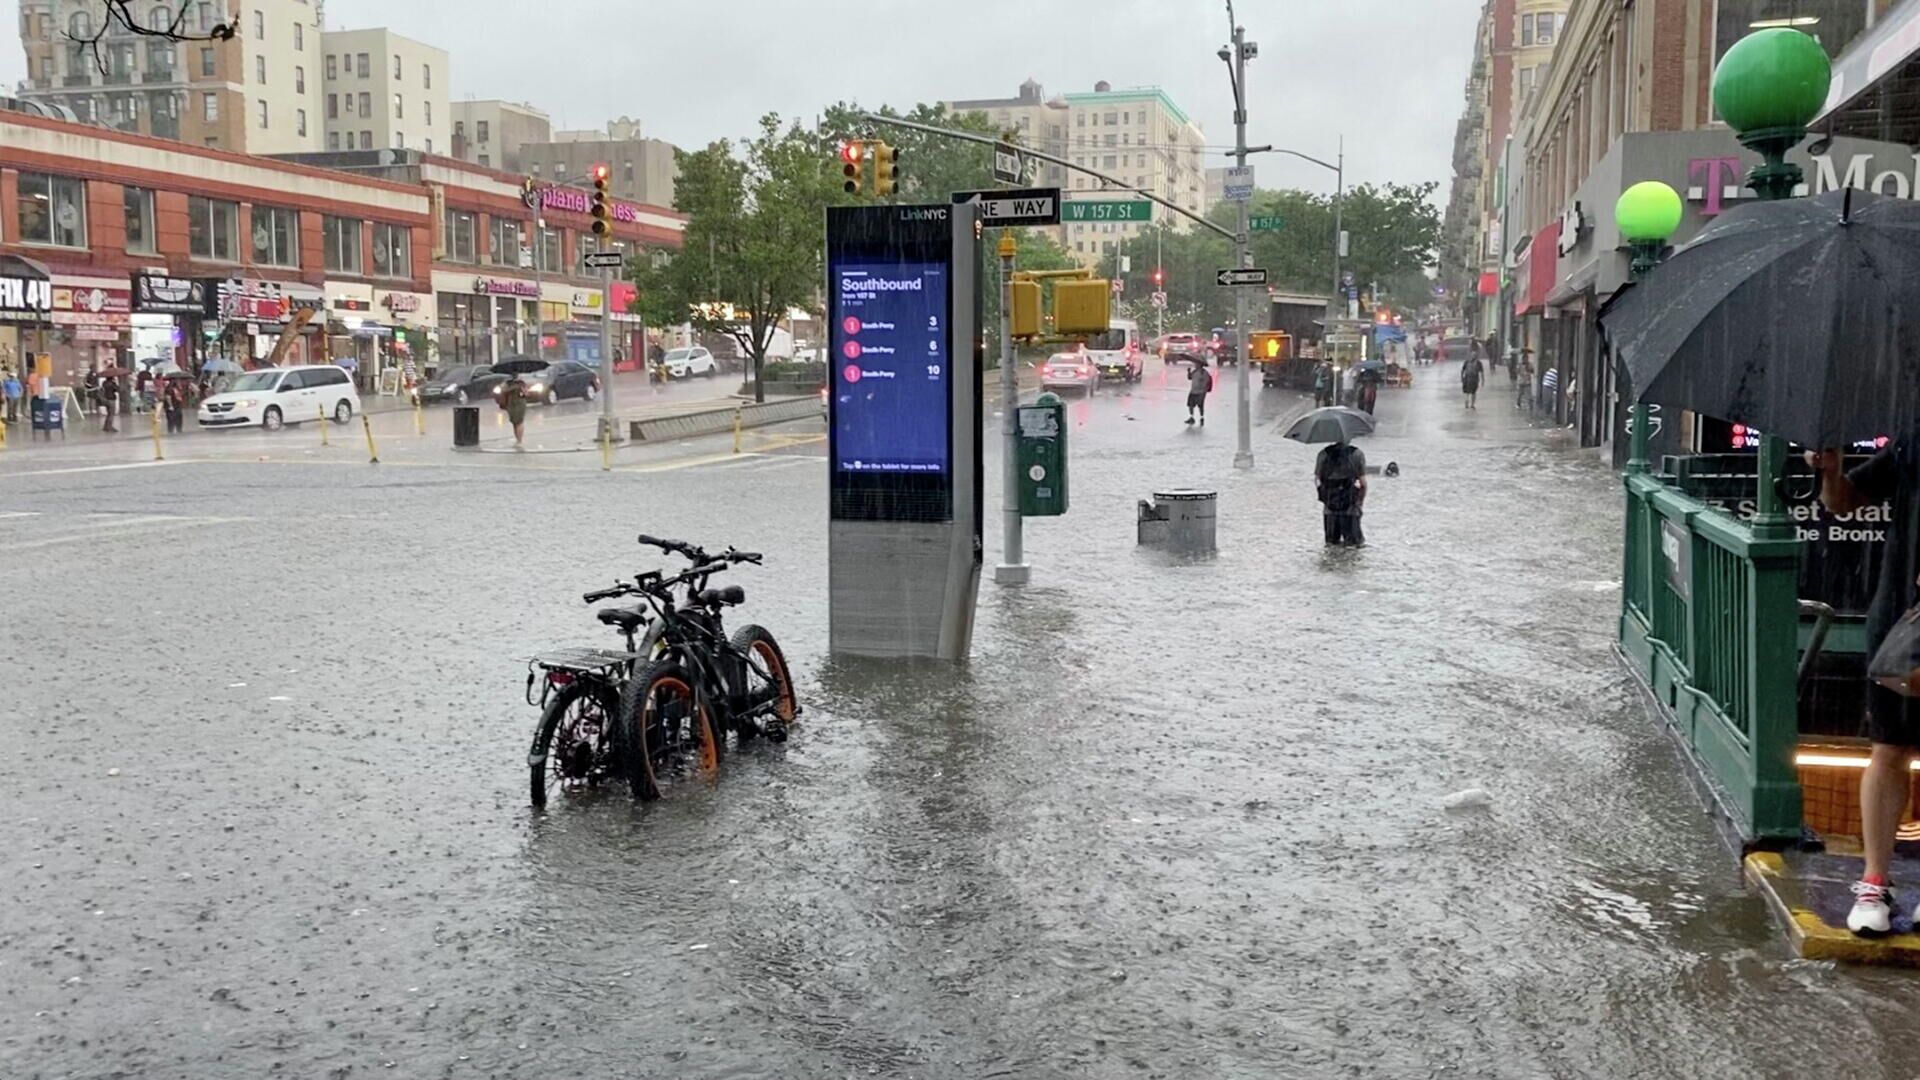 Затопленная в результате сильных дождей улица в Нью-Йорке - РИА Новости, 1920, 09.07.2021